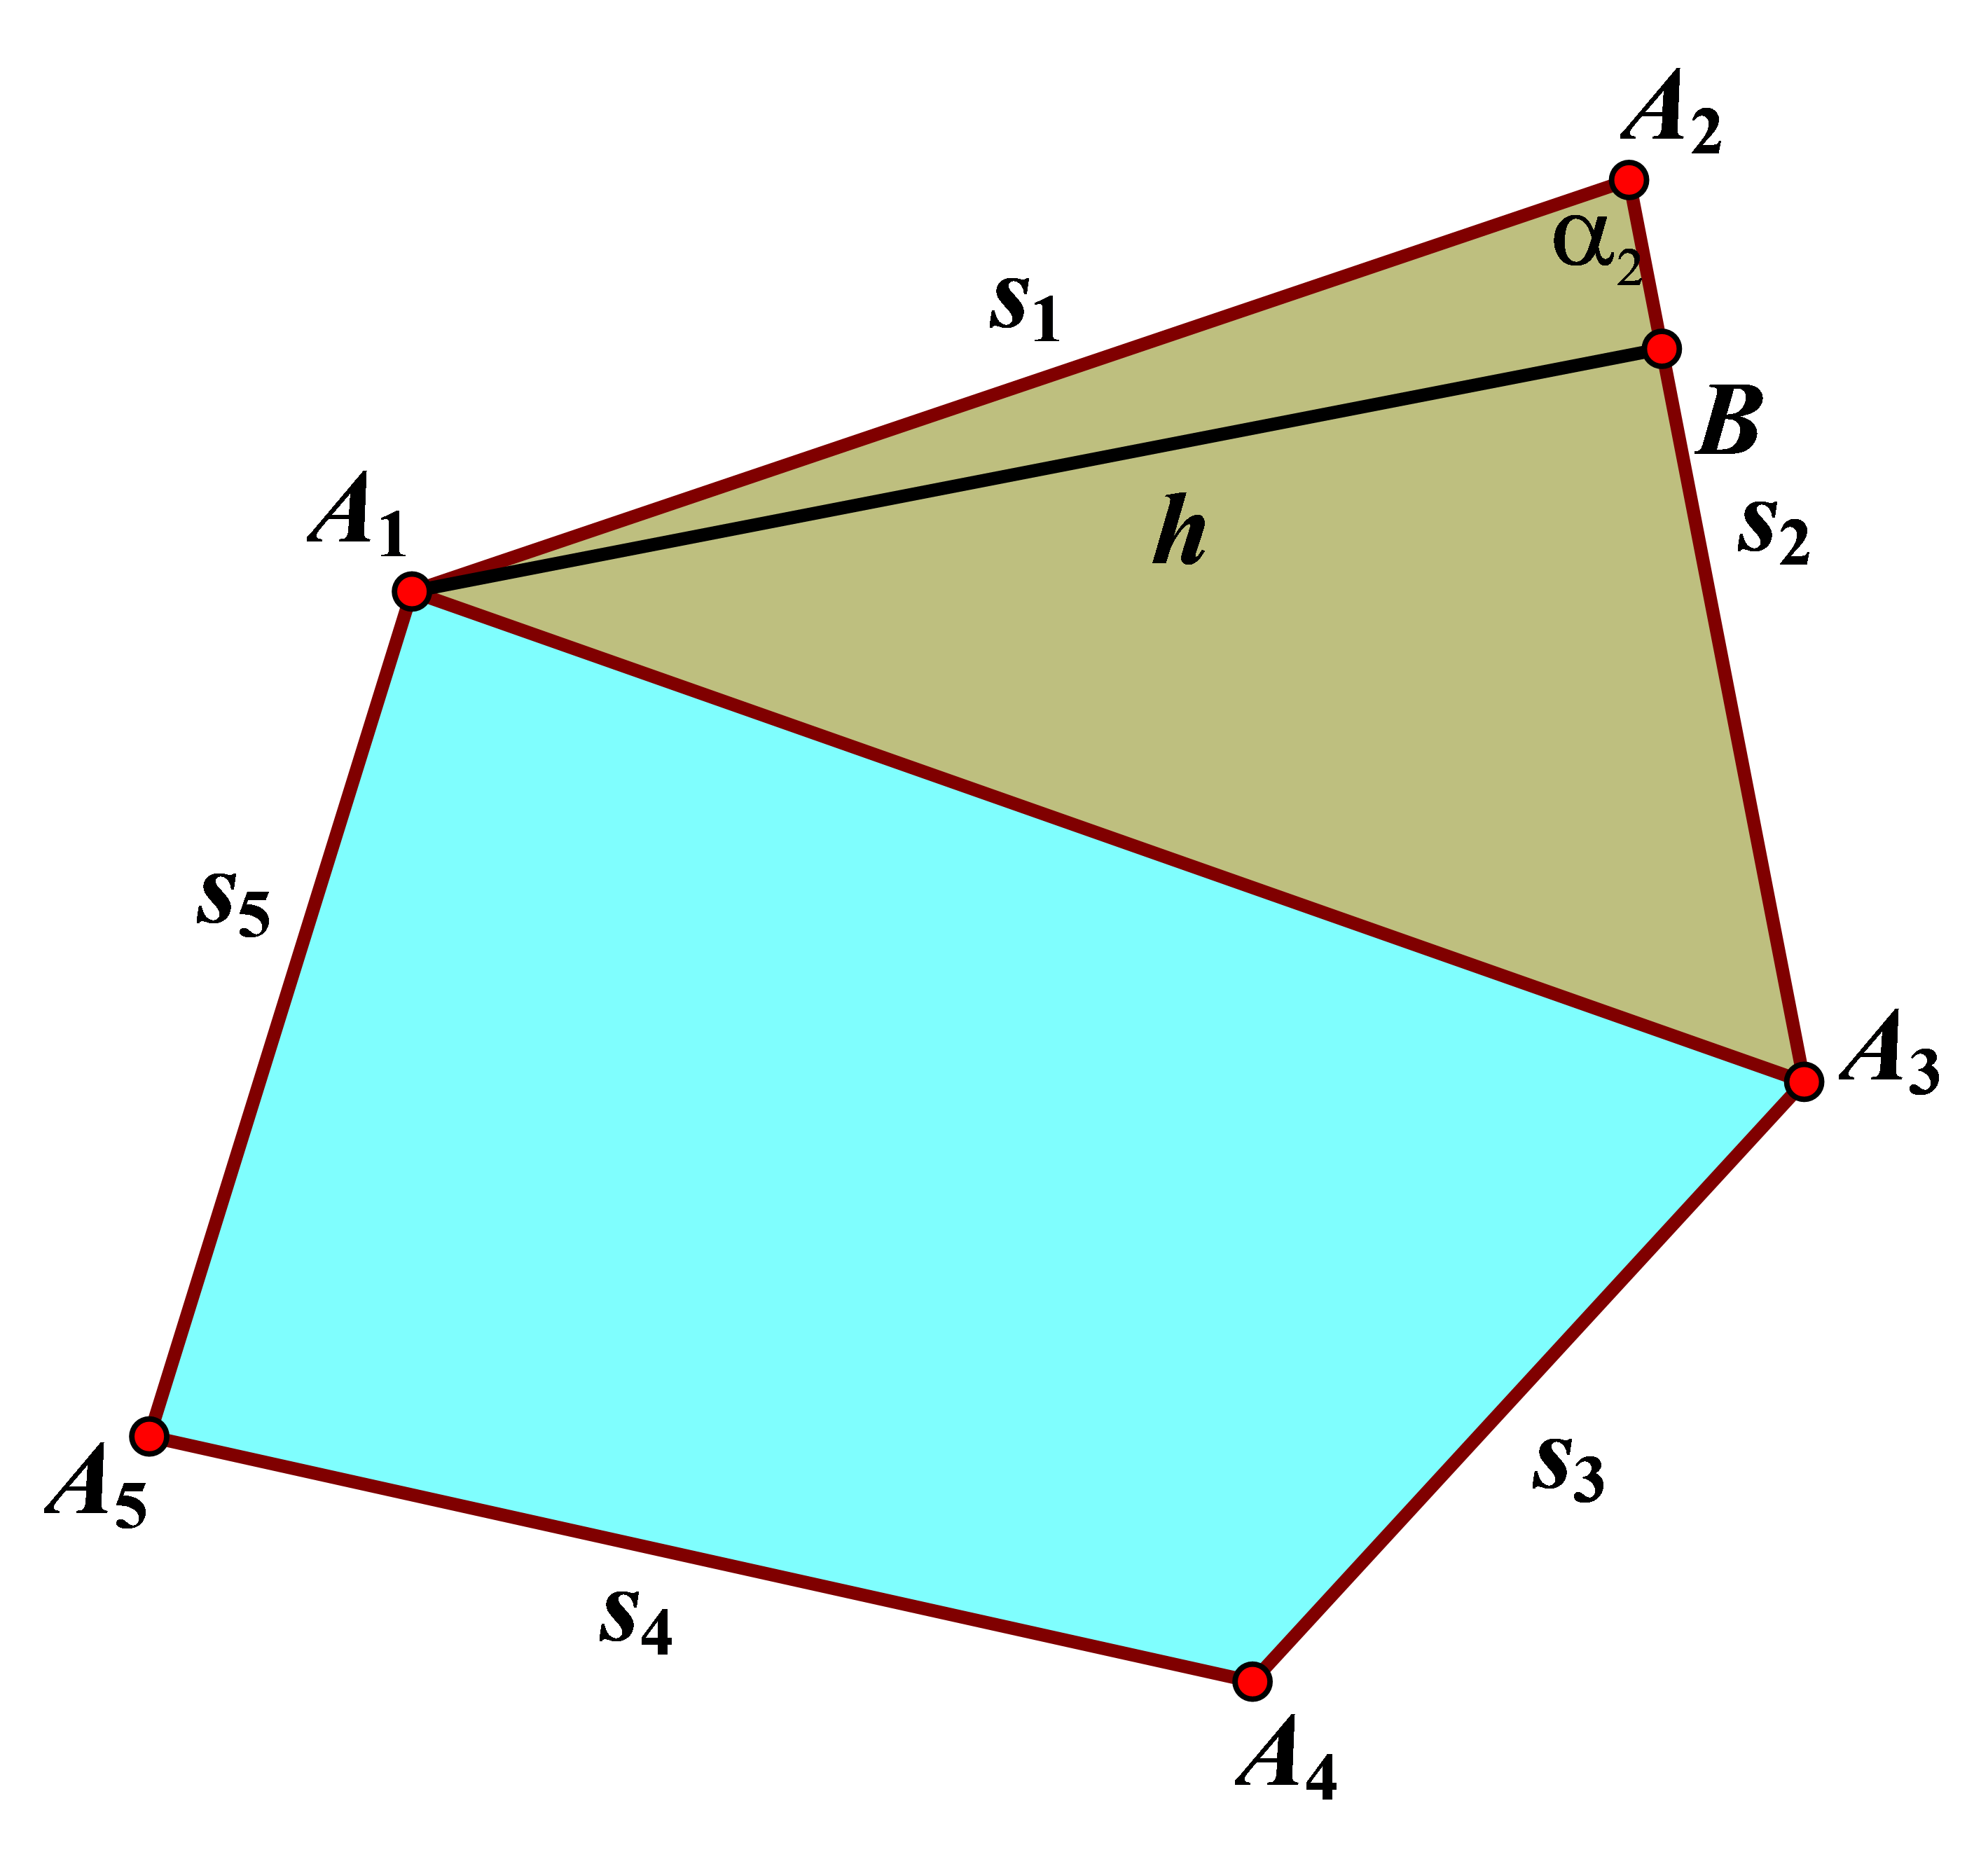 สูตรการหาพื้นที่รูป 5 เหลี่ยมใดๆ – เรียนรู้กับครูอั๋น: เพราะคณิตศาสตร์ขาดไม่ ได้